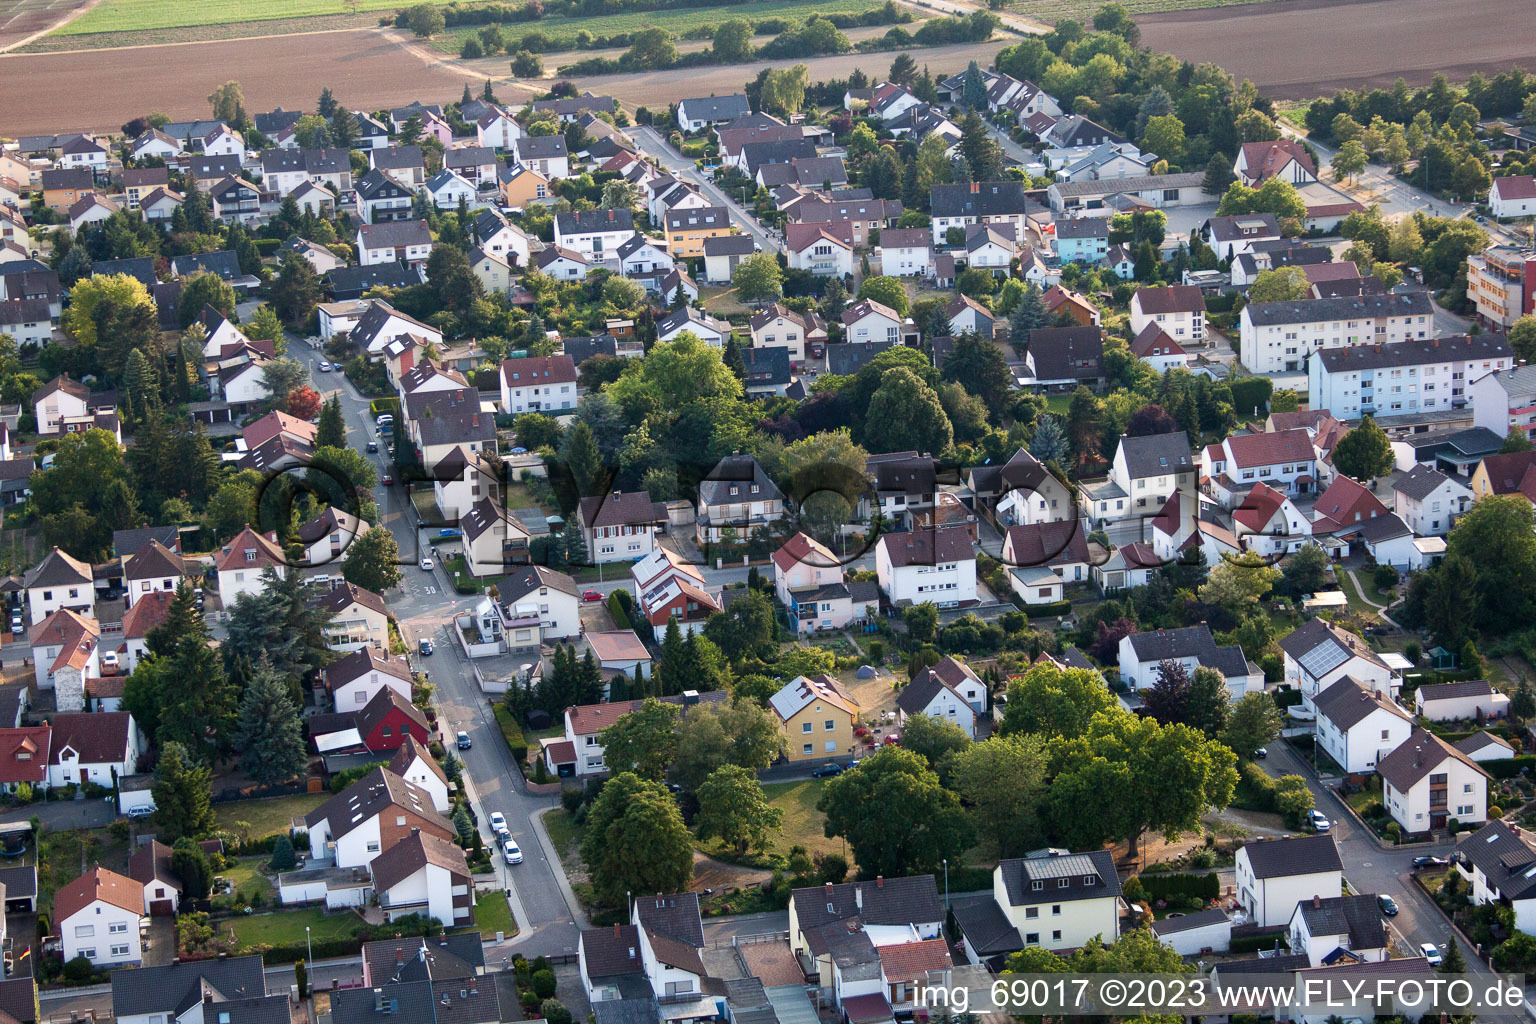 District Dannstadt in Dannstadt-Schauernheim in the state Rhineland-Palatinate, Germany from a drone